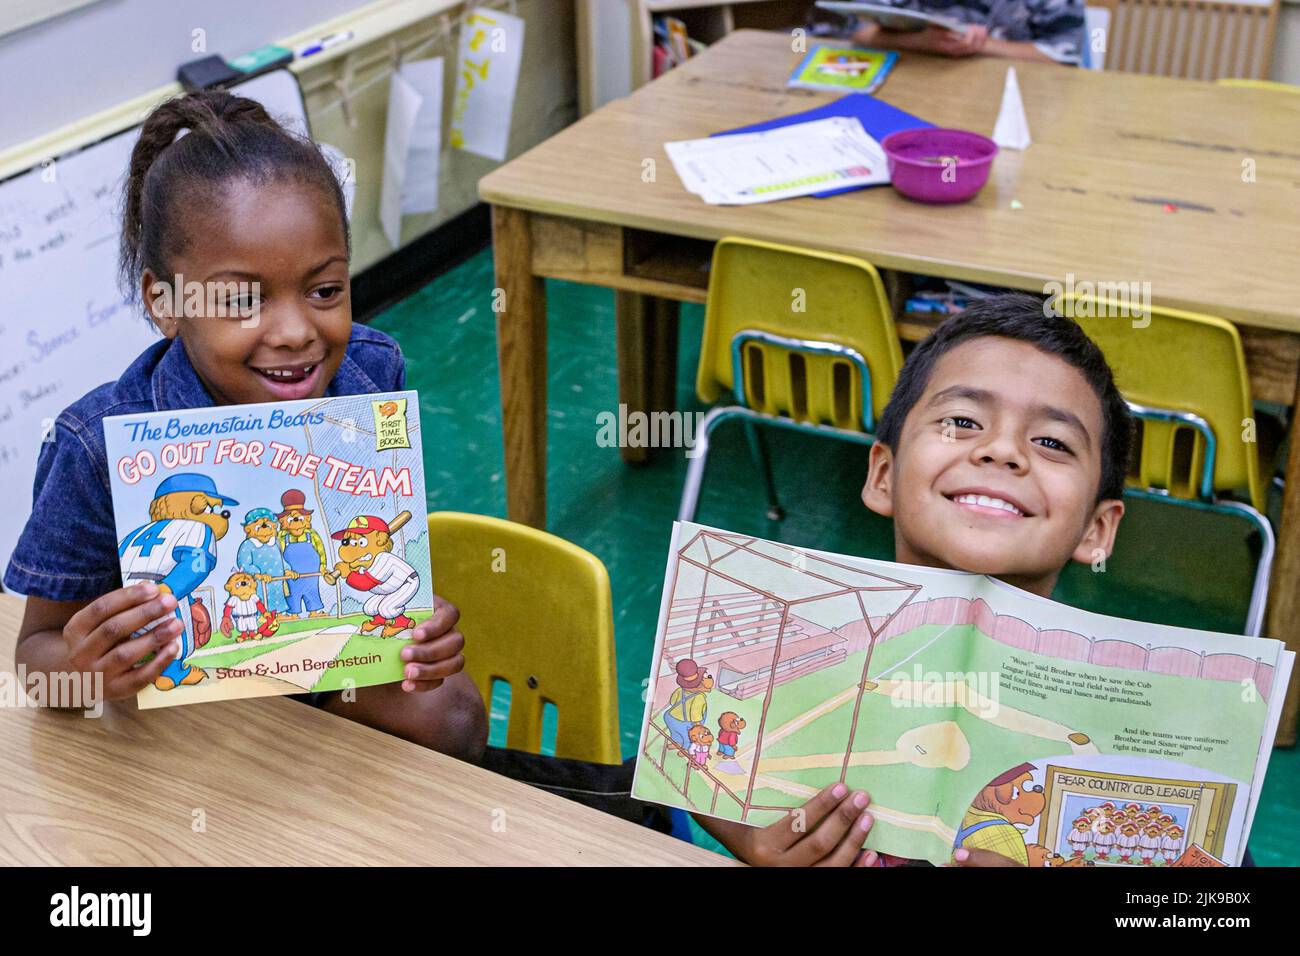 Miami Florida, Frederick Douglass Elementary School, quartier à faible revenu hispanique étudiant garçon, fille noire tenant des livres donnés classe Banque D'Images